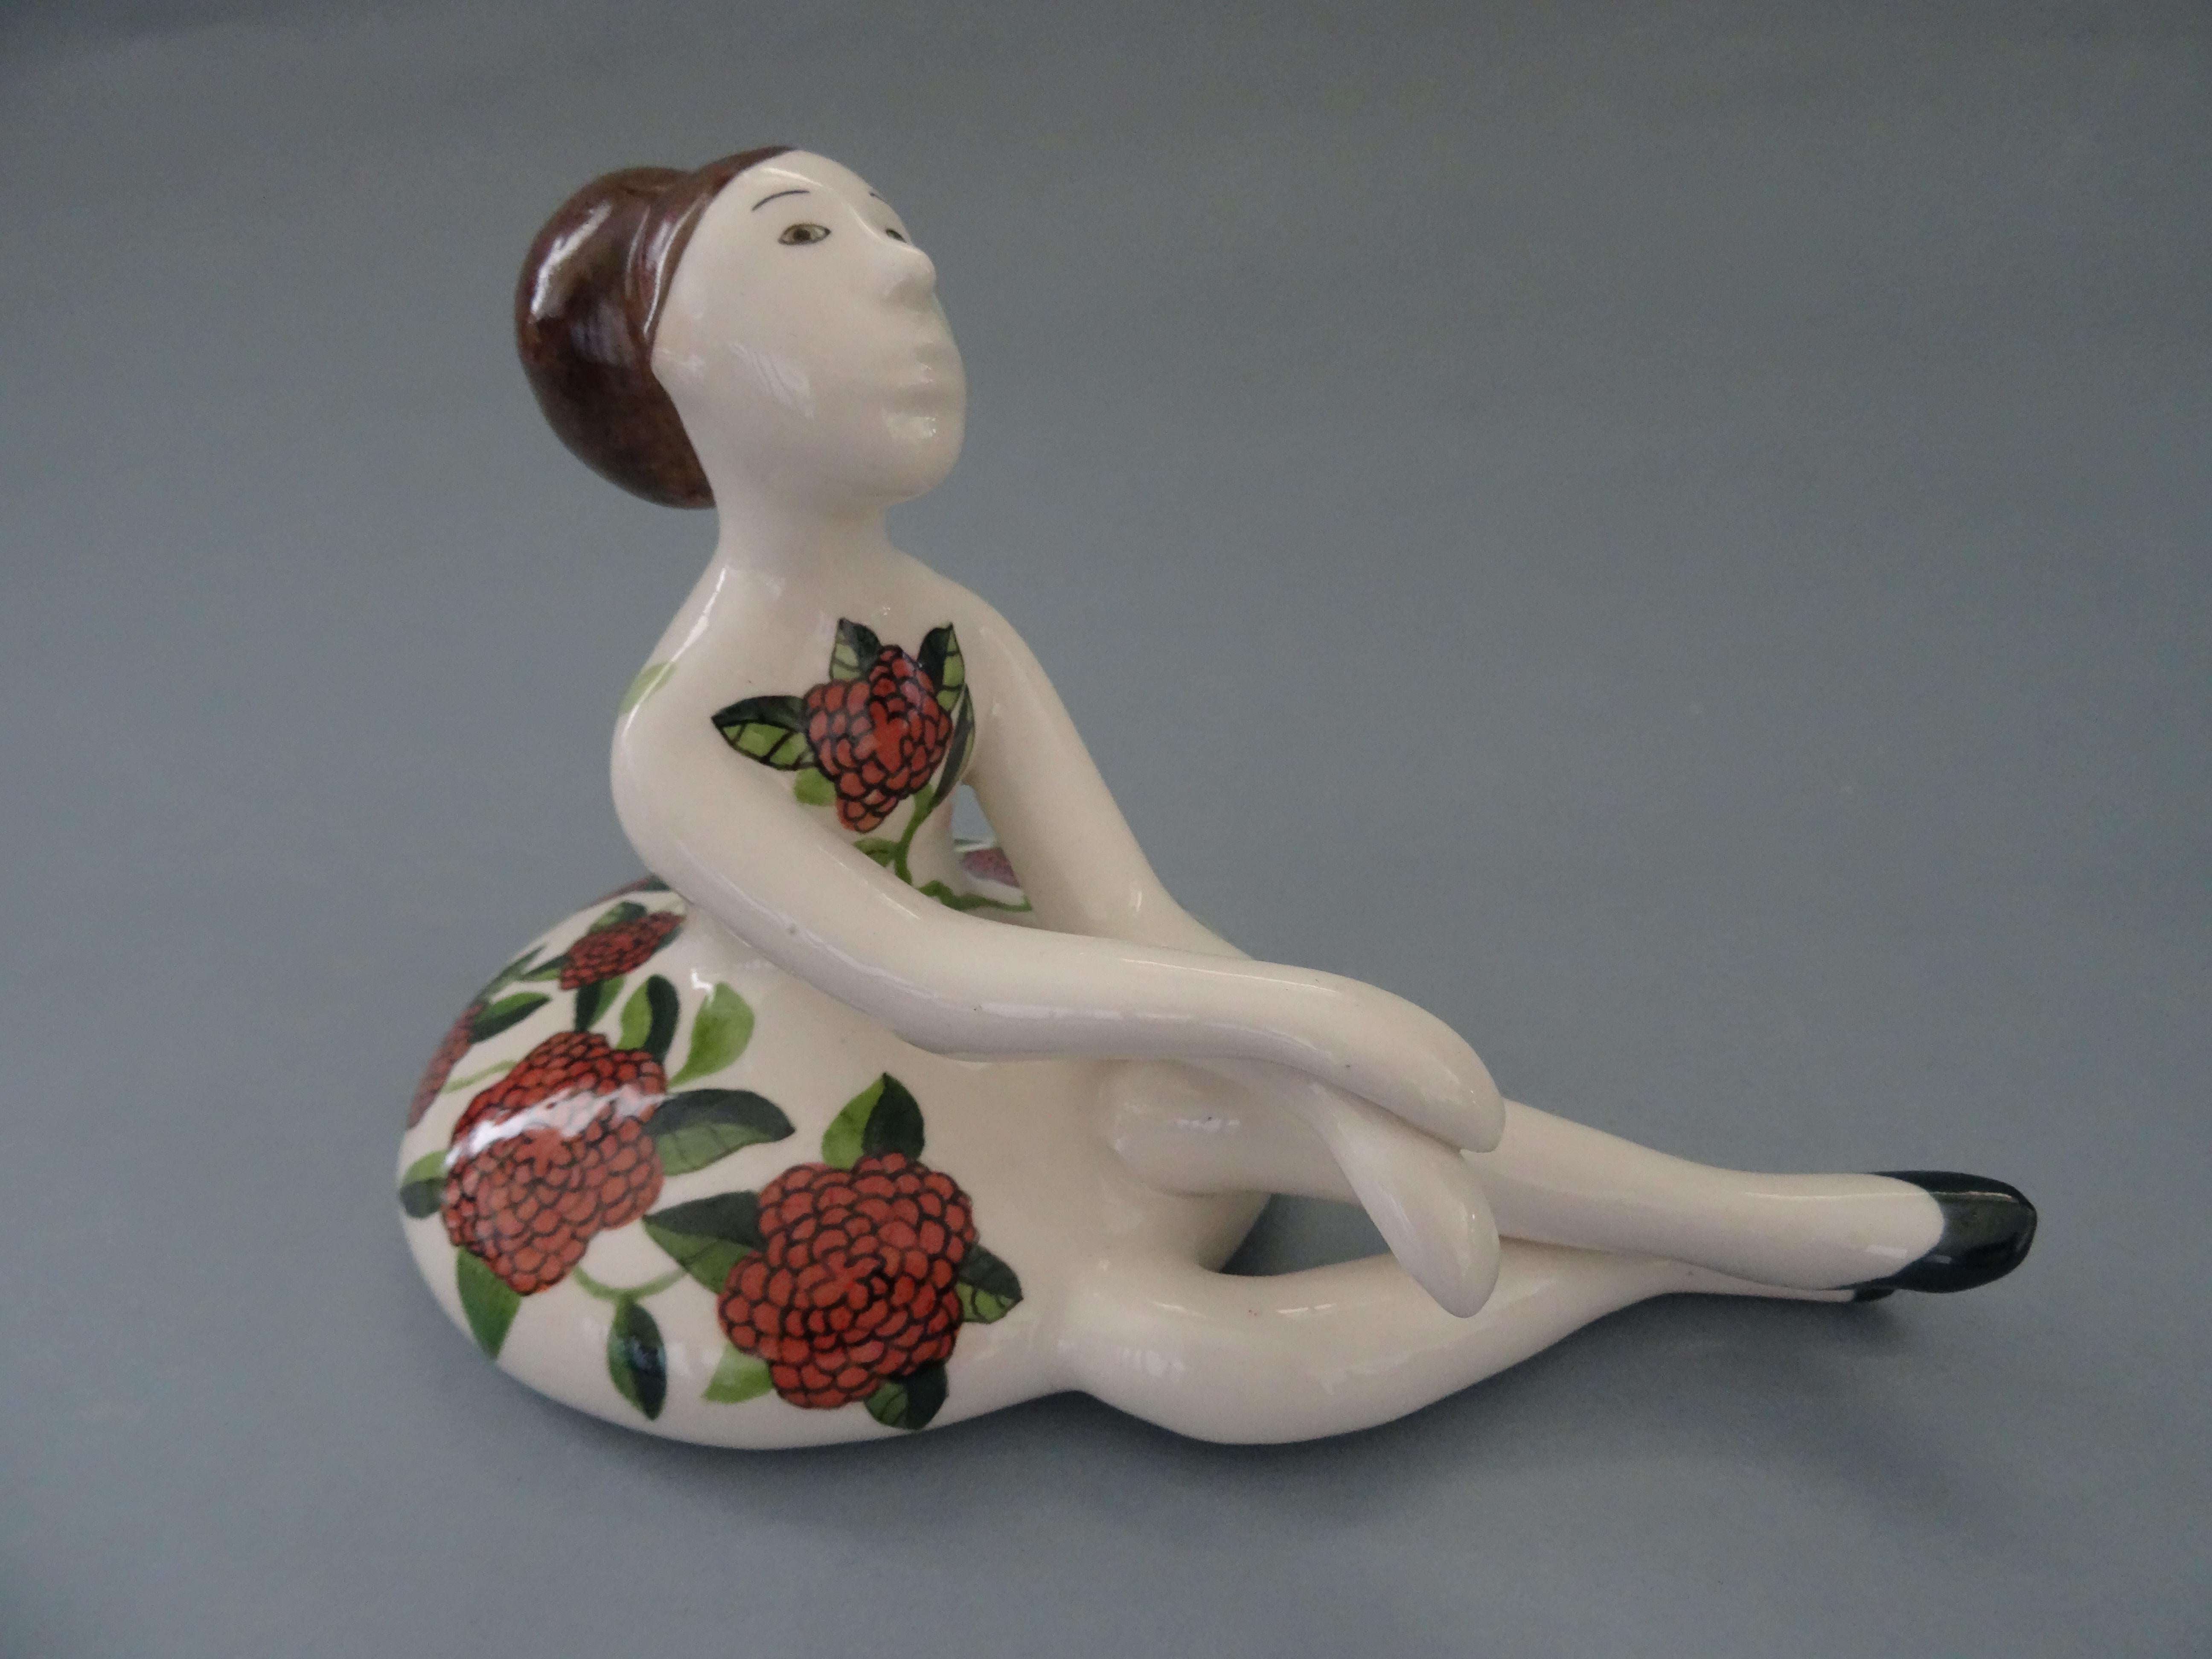 Ballerina 2015. Porcelaine, 12 x 19 cm
(2 de 3)

La figurine Ballerina est une charmante pièce d'art en porcelaine créée en 2015. Il représente une ballerine assise, gracieusement posée et vêtue d'une jolie robe à fleurs. La ballerine est